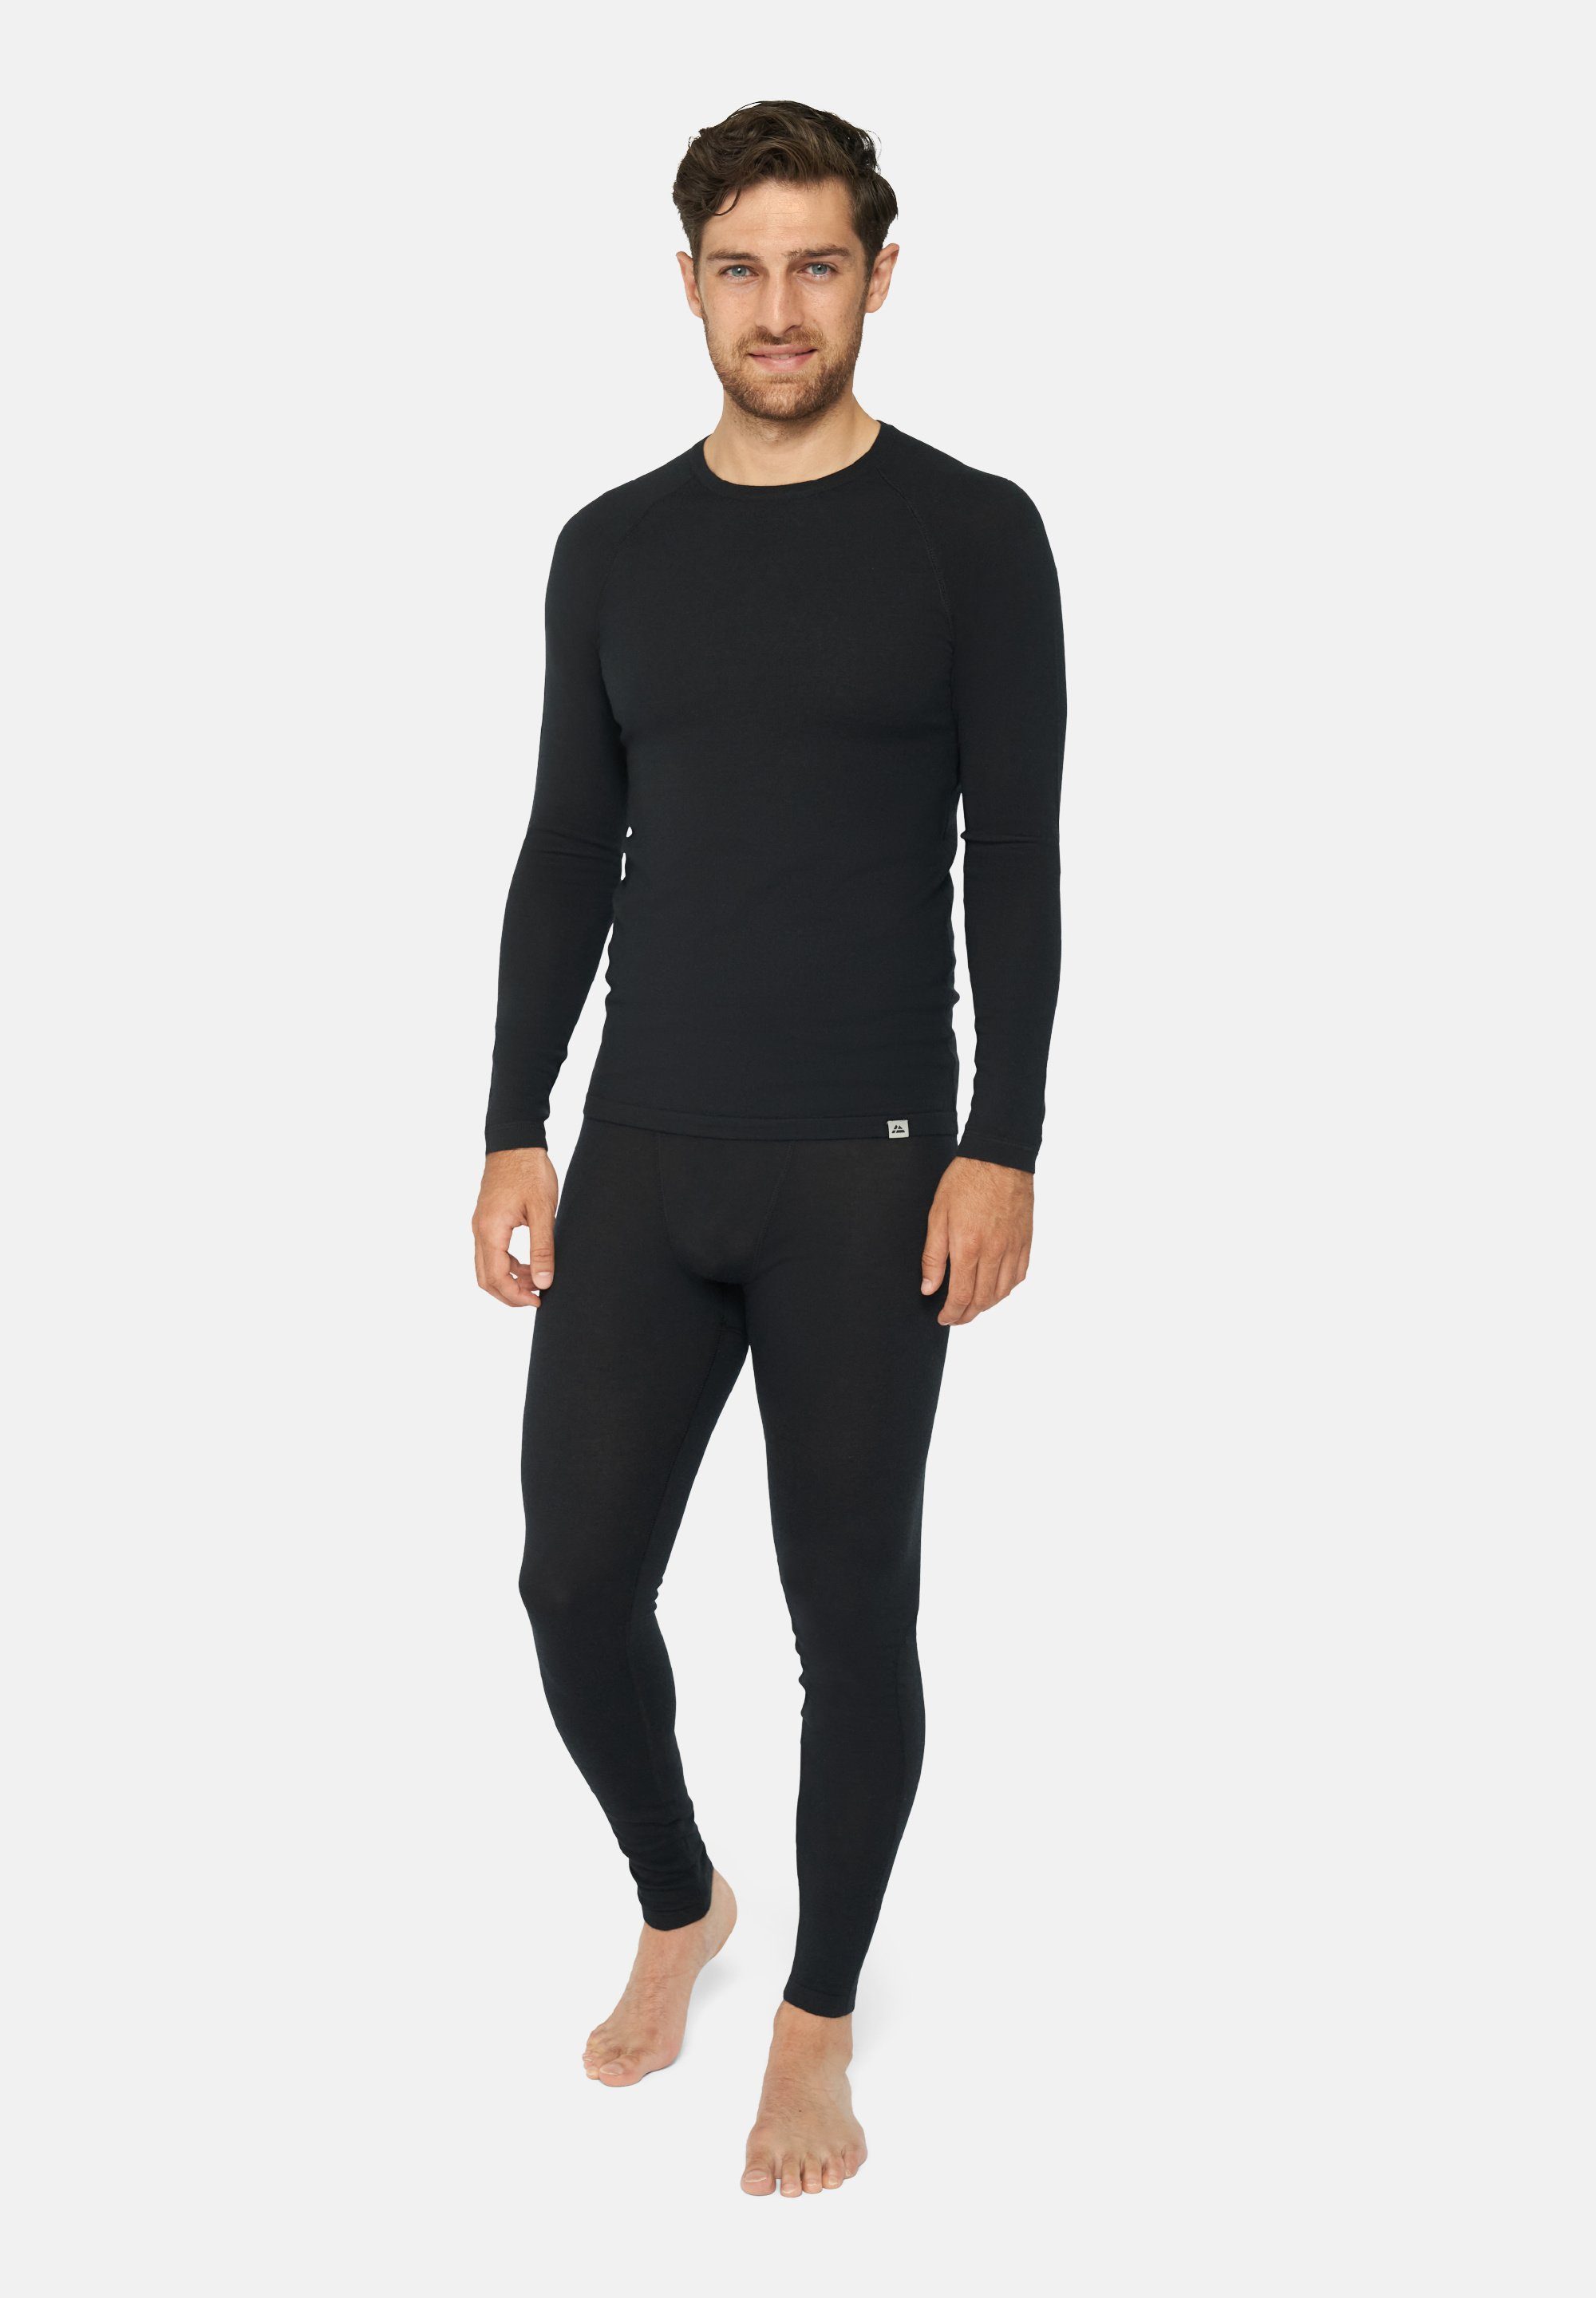 Thermo-Unterwäsche für Set & Herren DANISH Shirt schwarz Hose, Merino Thermounterhemd Temperaturregulierend Langarm ENDURANCE